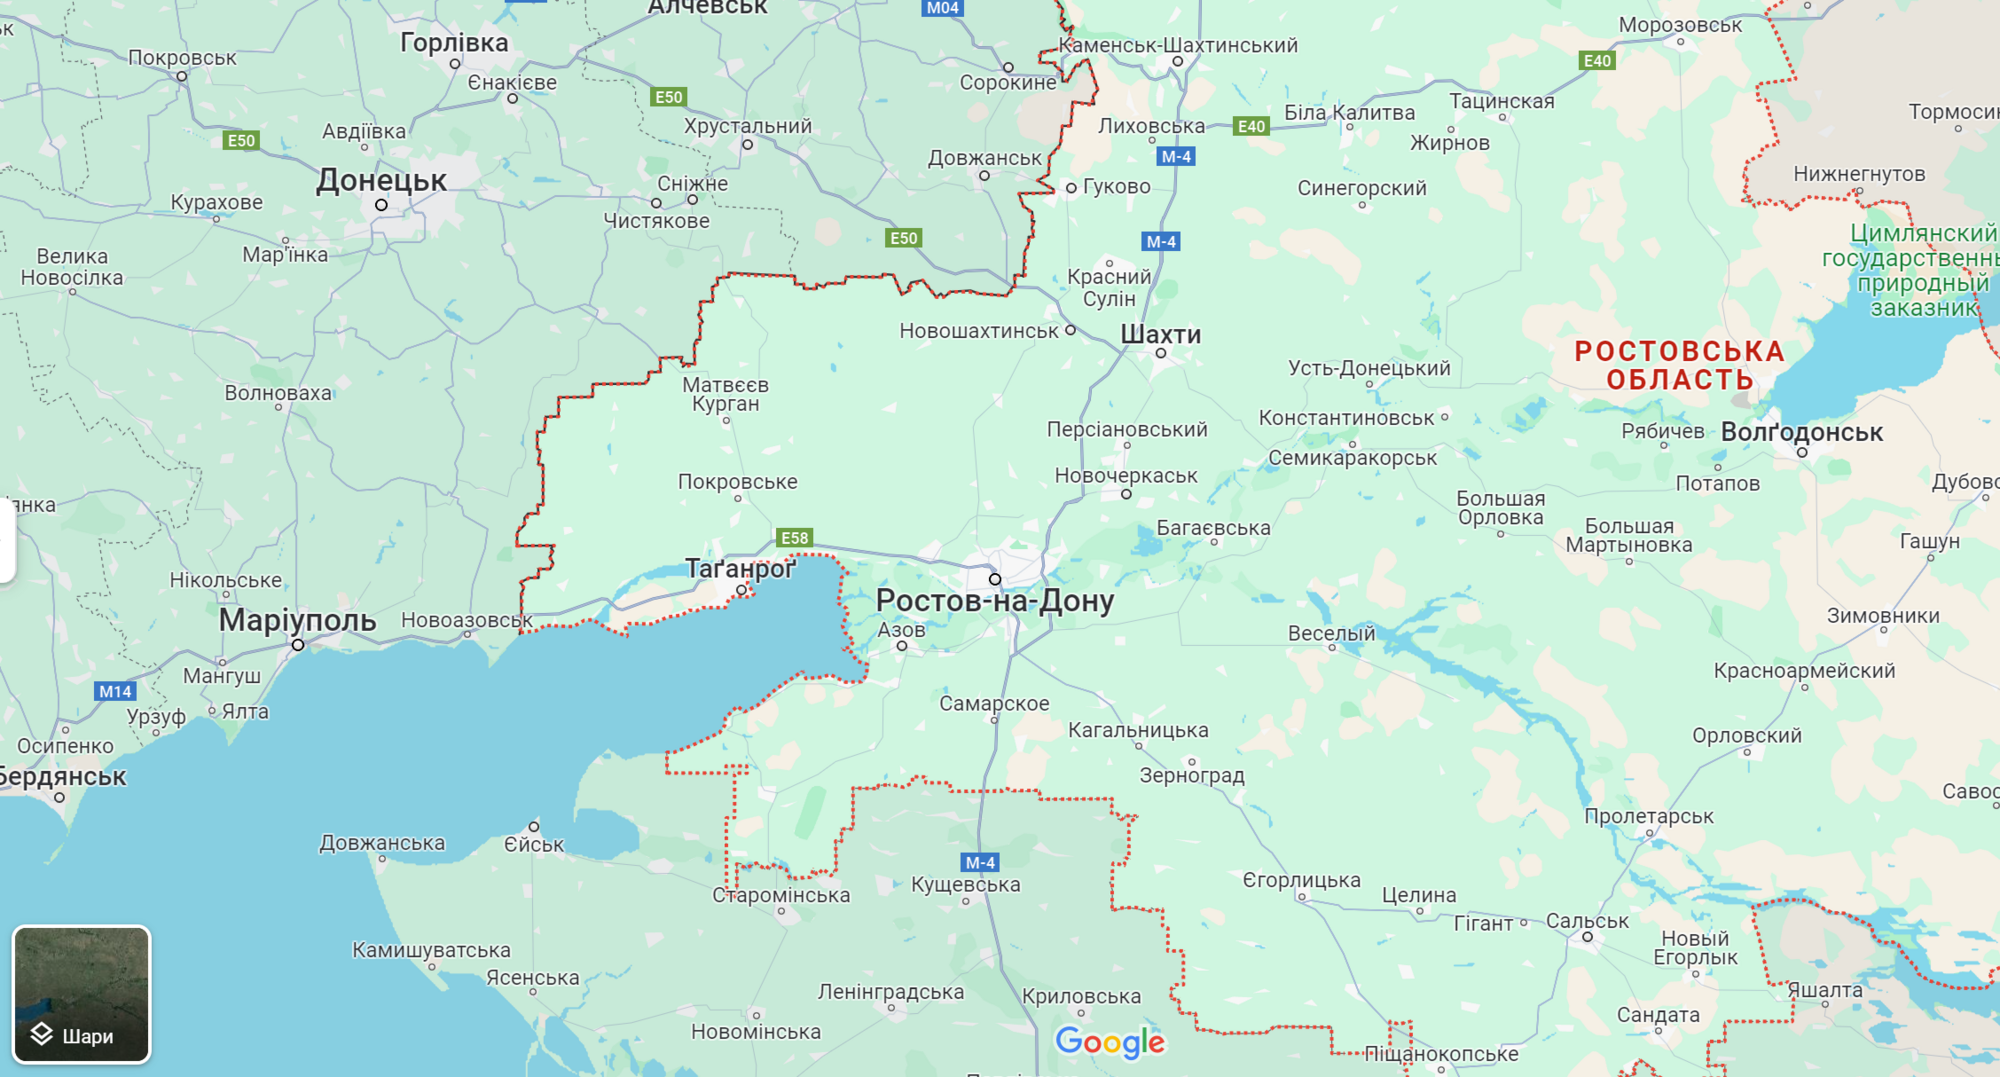 Атака на паливну базу у Ростовській області була операцією ГУР: екстрені служби досі не можуть впоратися з вогнем qkxiqdxiqdeihrant